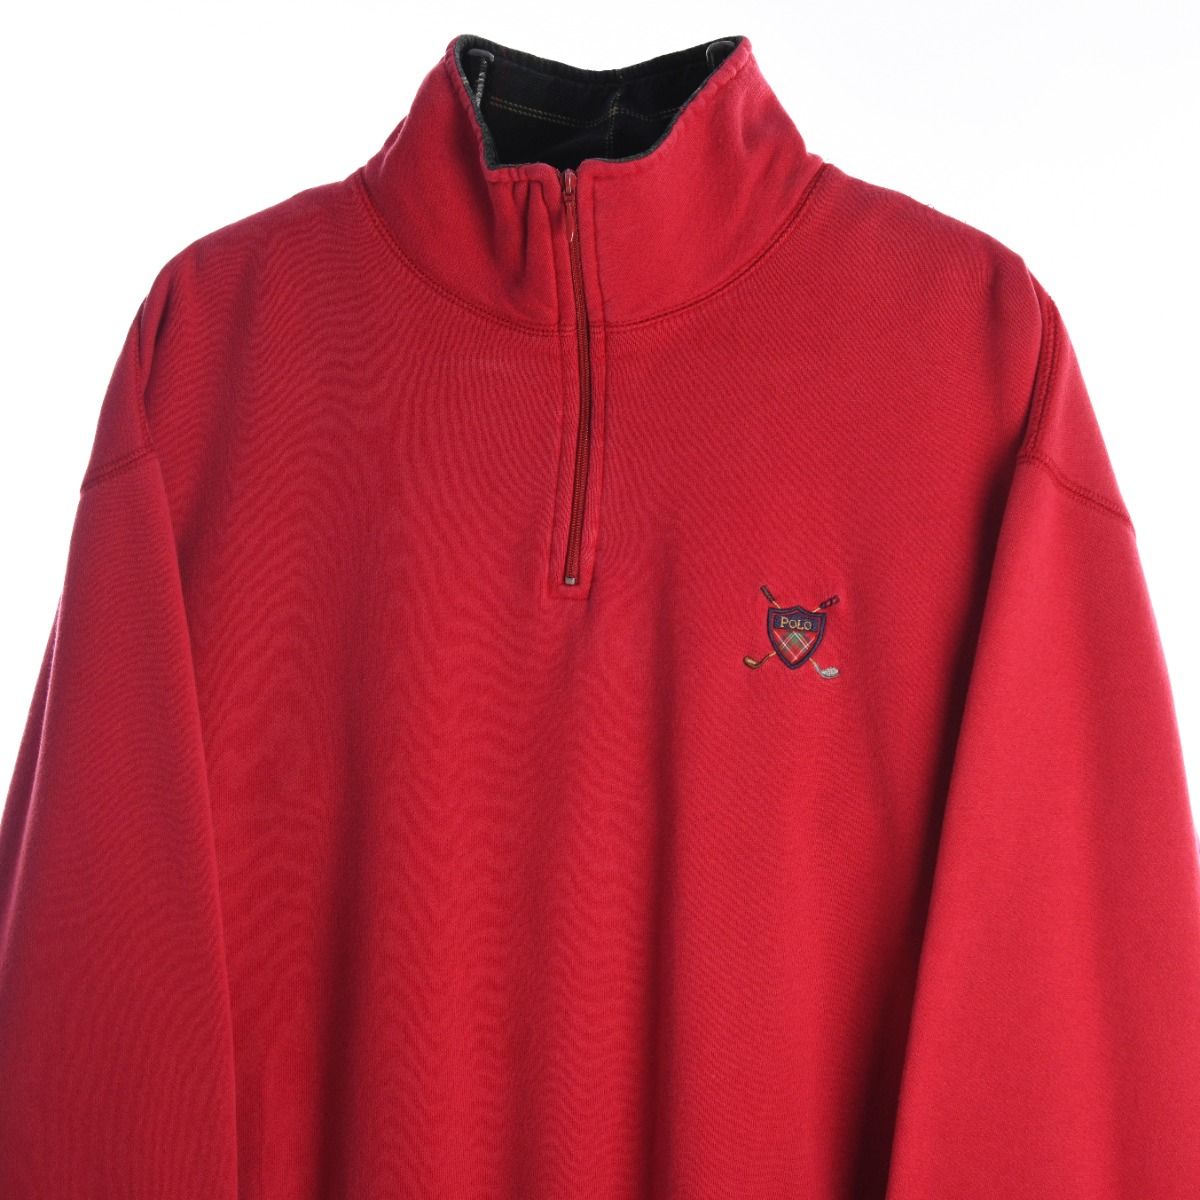 Ralph Lauren Polo Golf Quarter Zip Red Sweatshirt